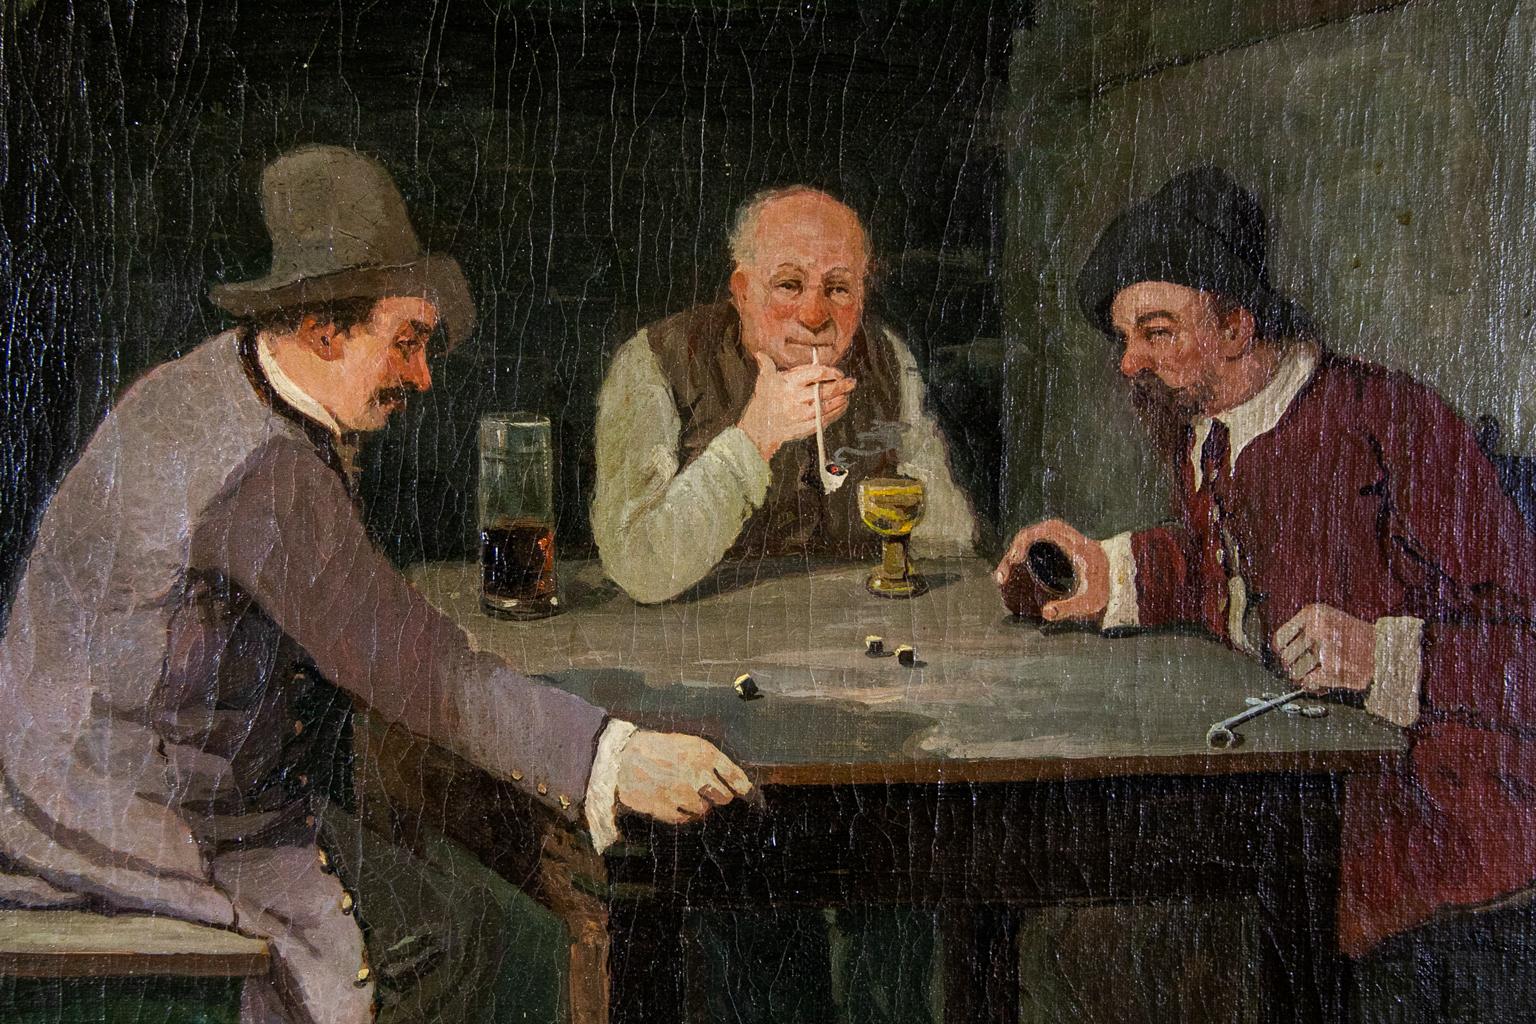 scène de taverne du 19e siècle, peinture à l'huile de L. Wittkowski, Berlin. Les hommes jouent aux dés, boivent de la bière et fument des pipes en terre.